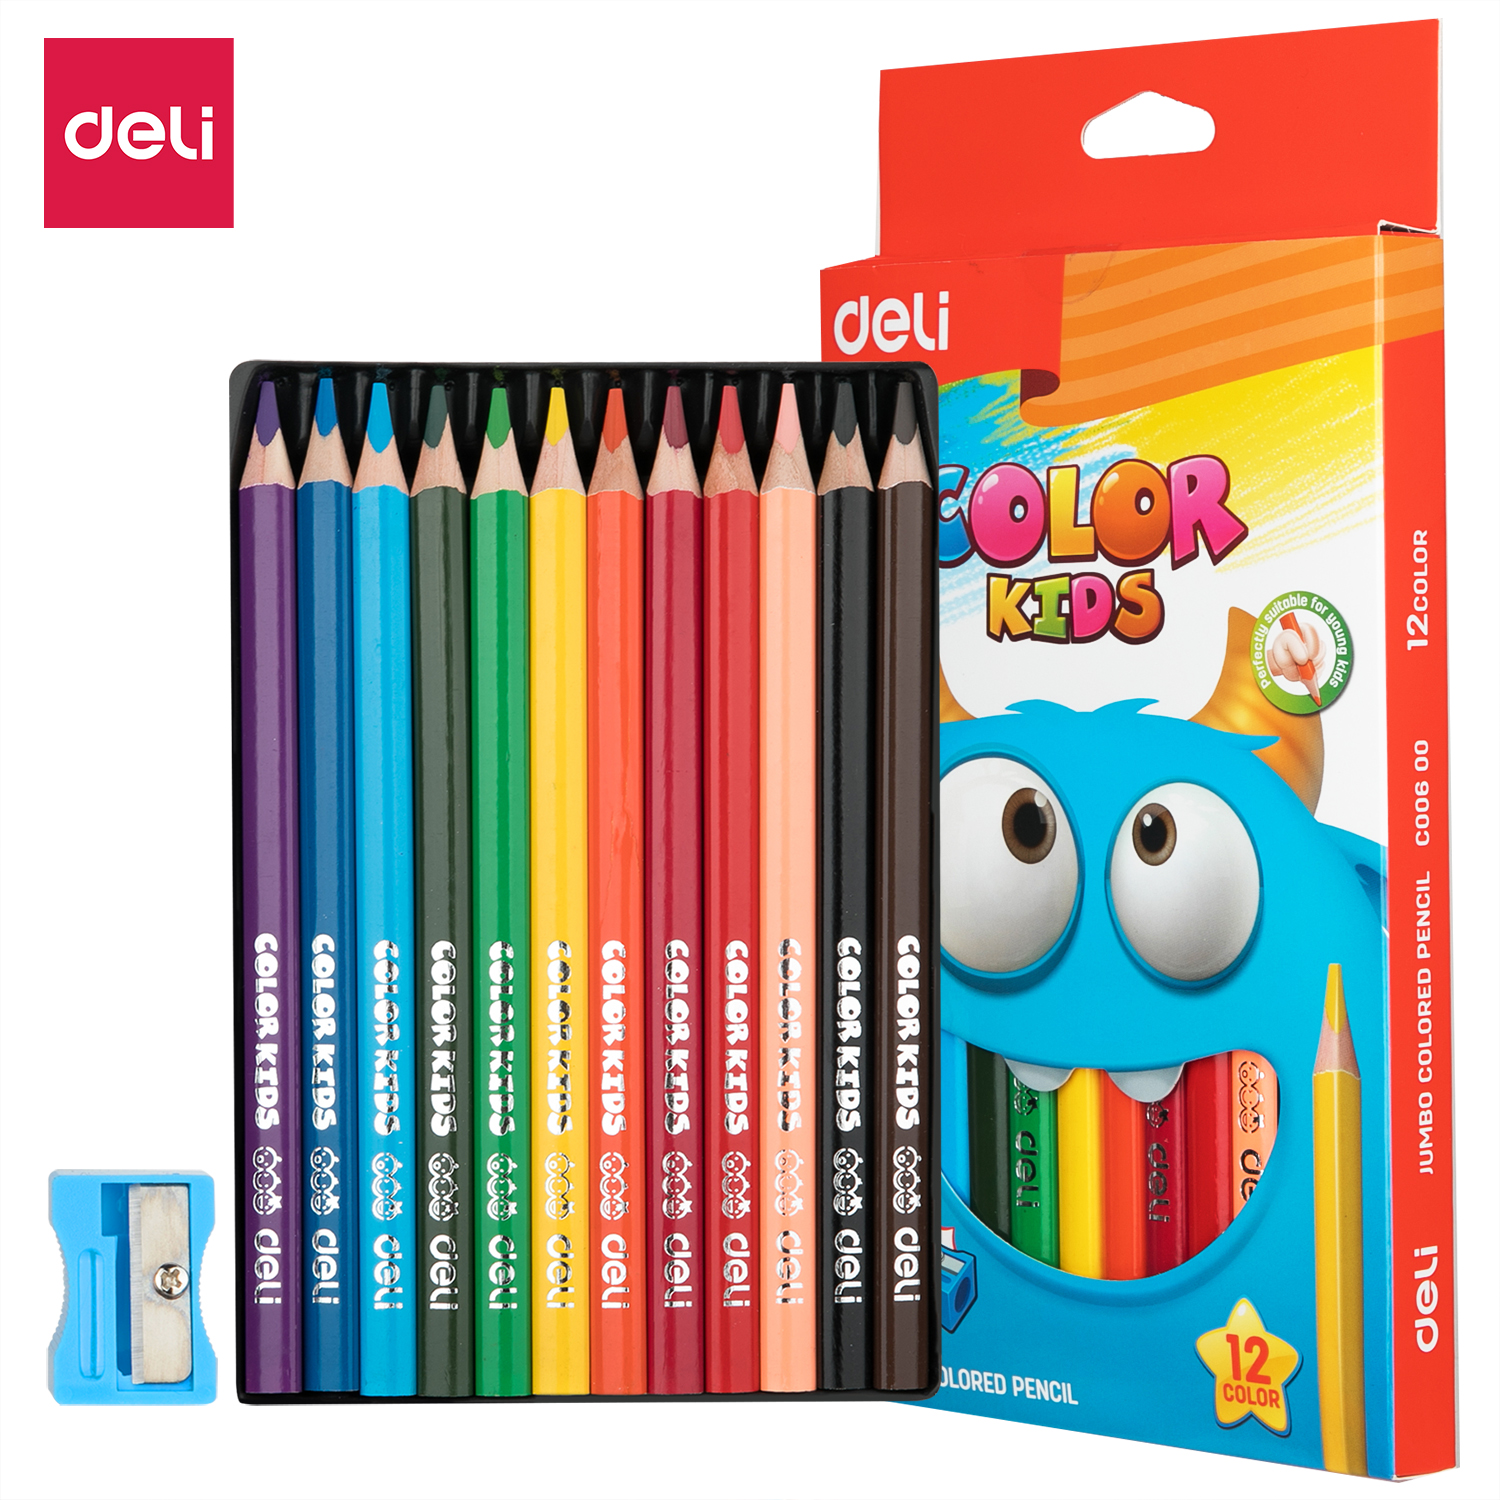 Deli-EC00600 Jumbo Colored Pencil